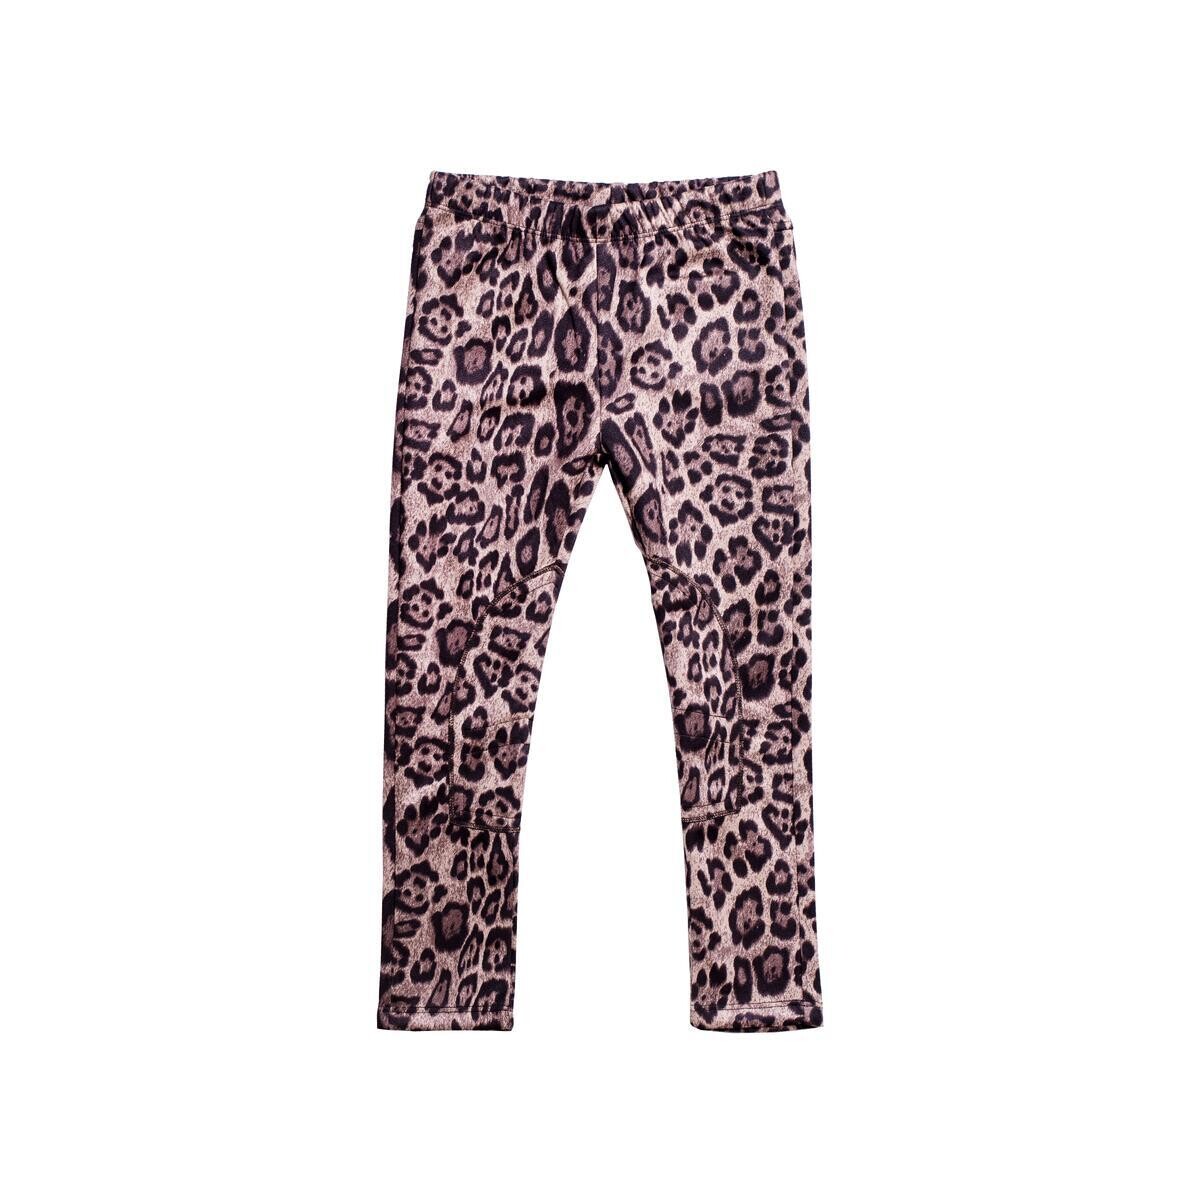 Imoga Girls Leopard Pants - Alison